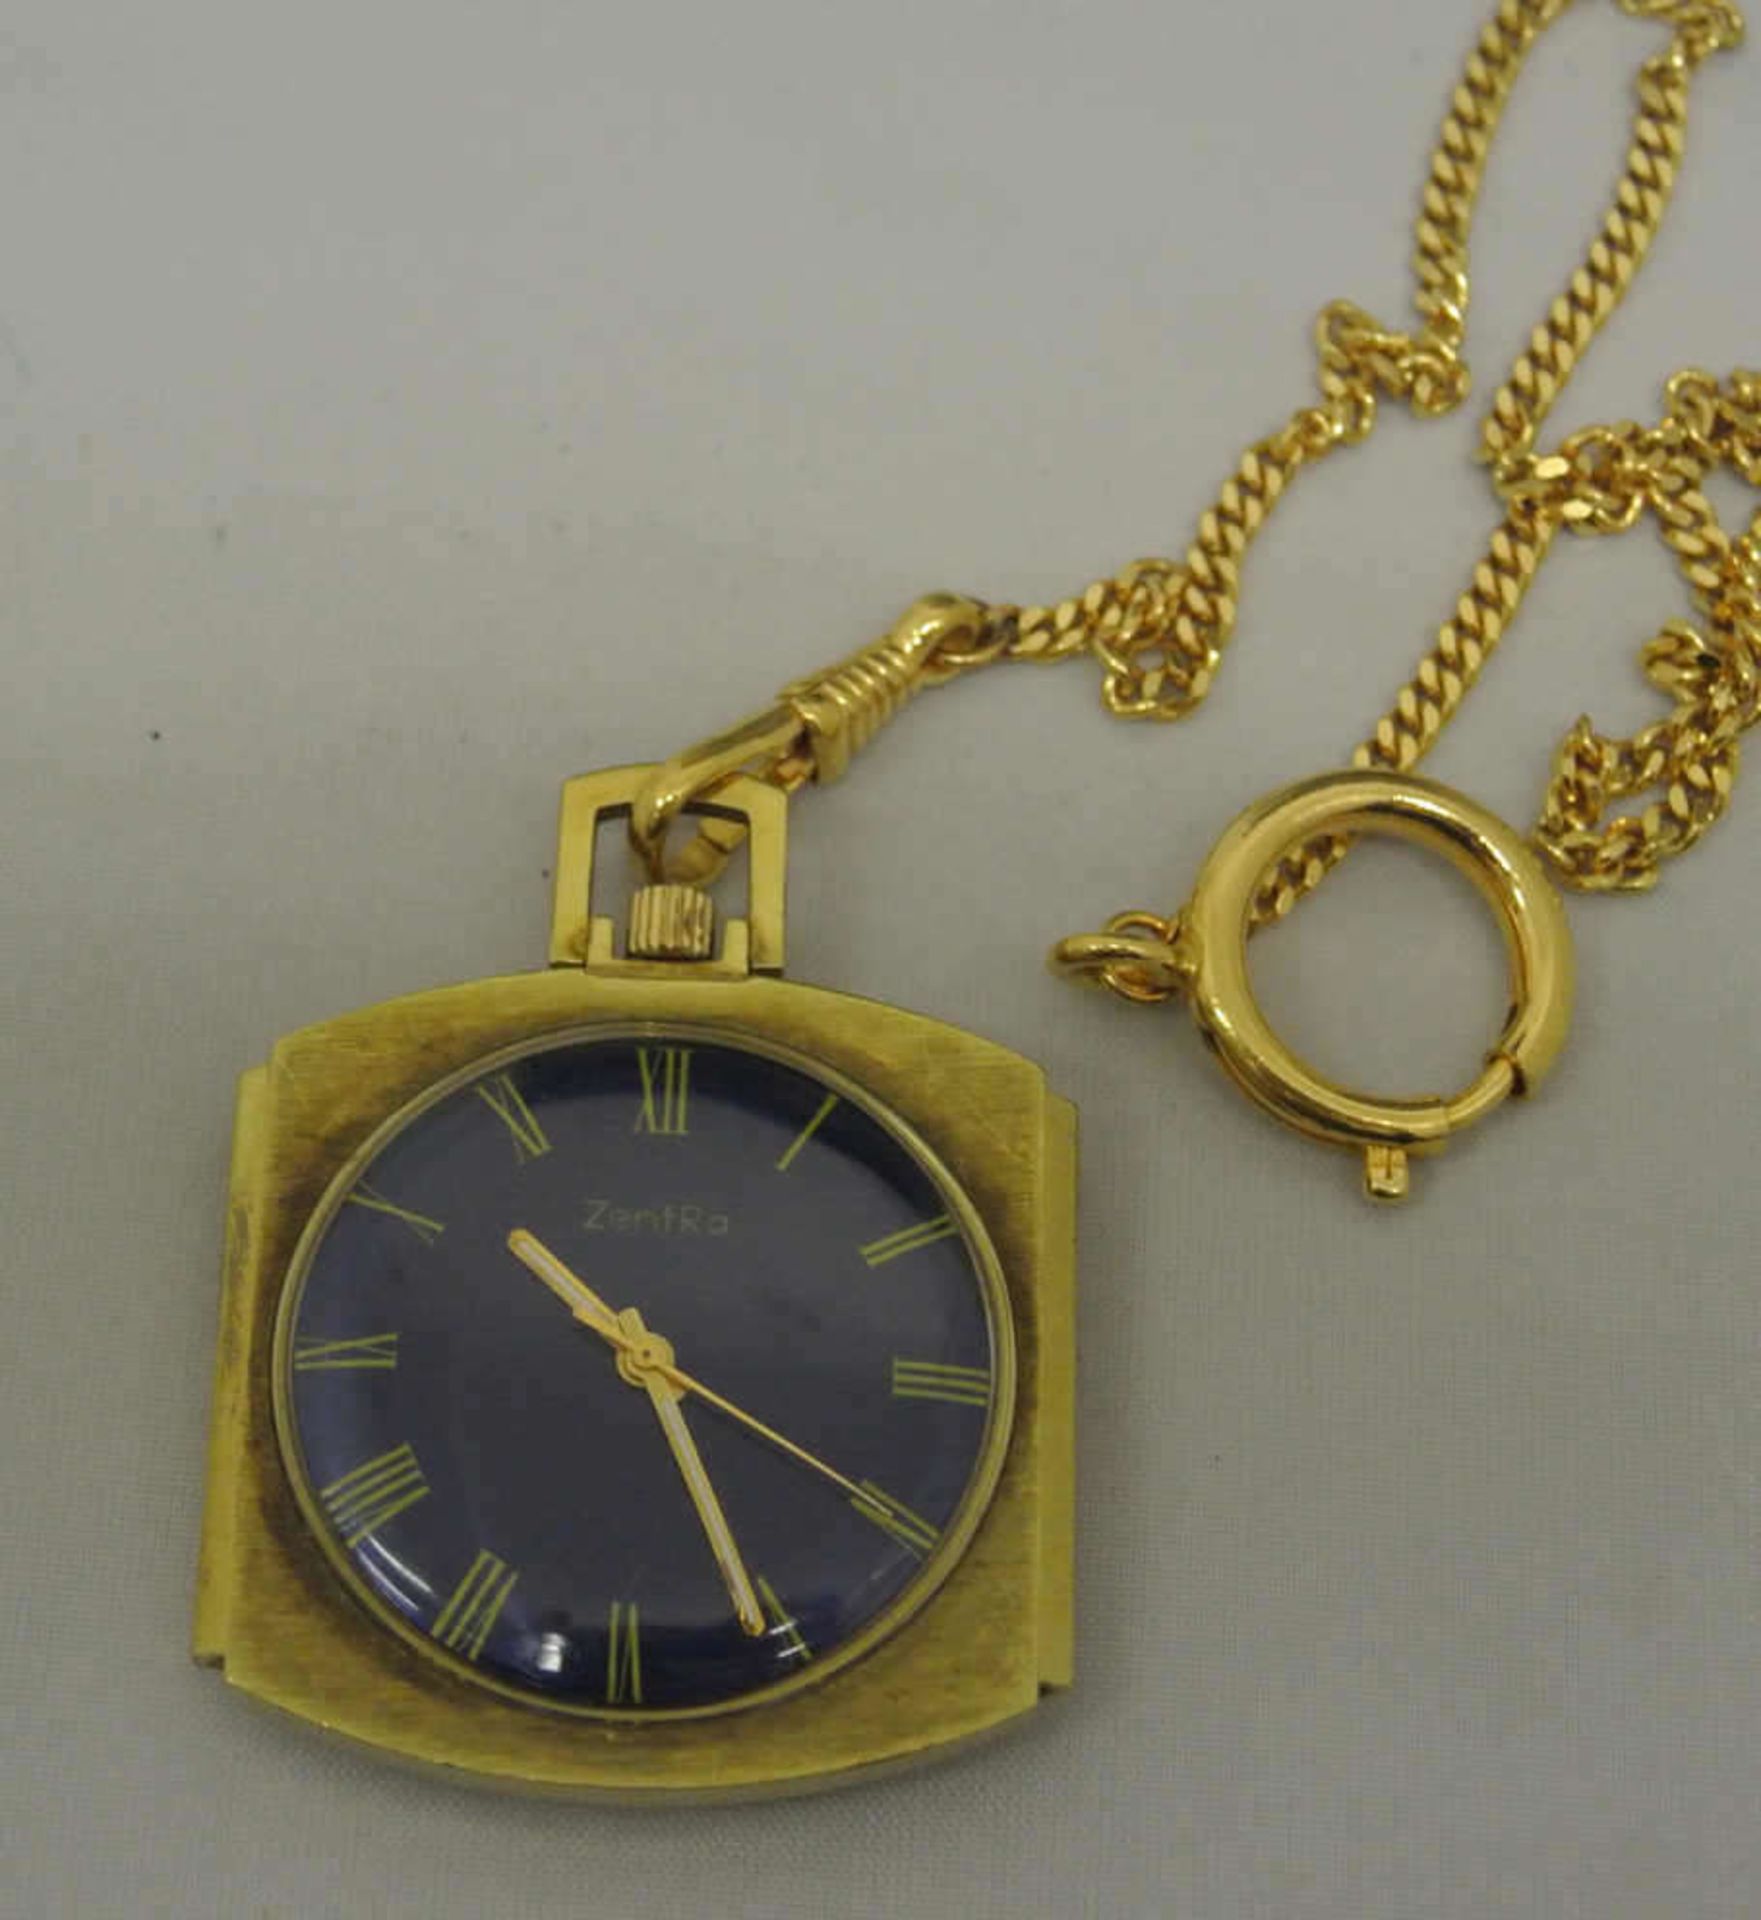 1 Taschenuhr mit Uhrenkette, Fa. Zentra, mechanisch, goldfarben, blaues Zifferblatt, Funktion